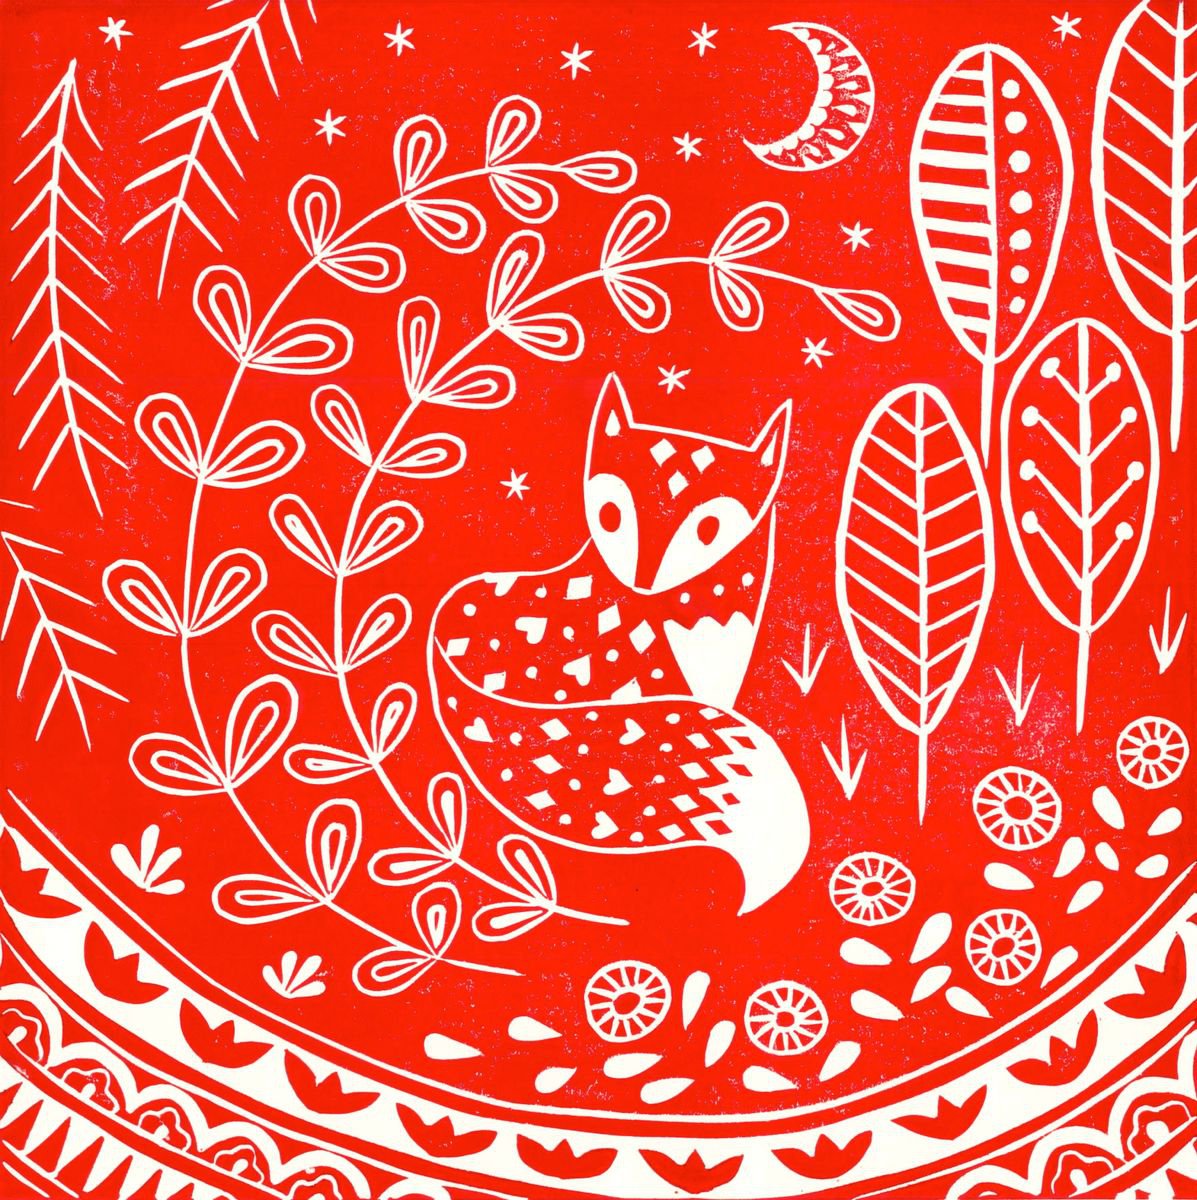 Daniel Fox in red, limited edition scandinavian folk art linocut print by Katie Farrell